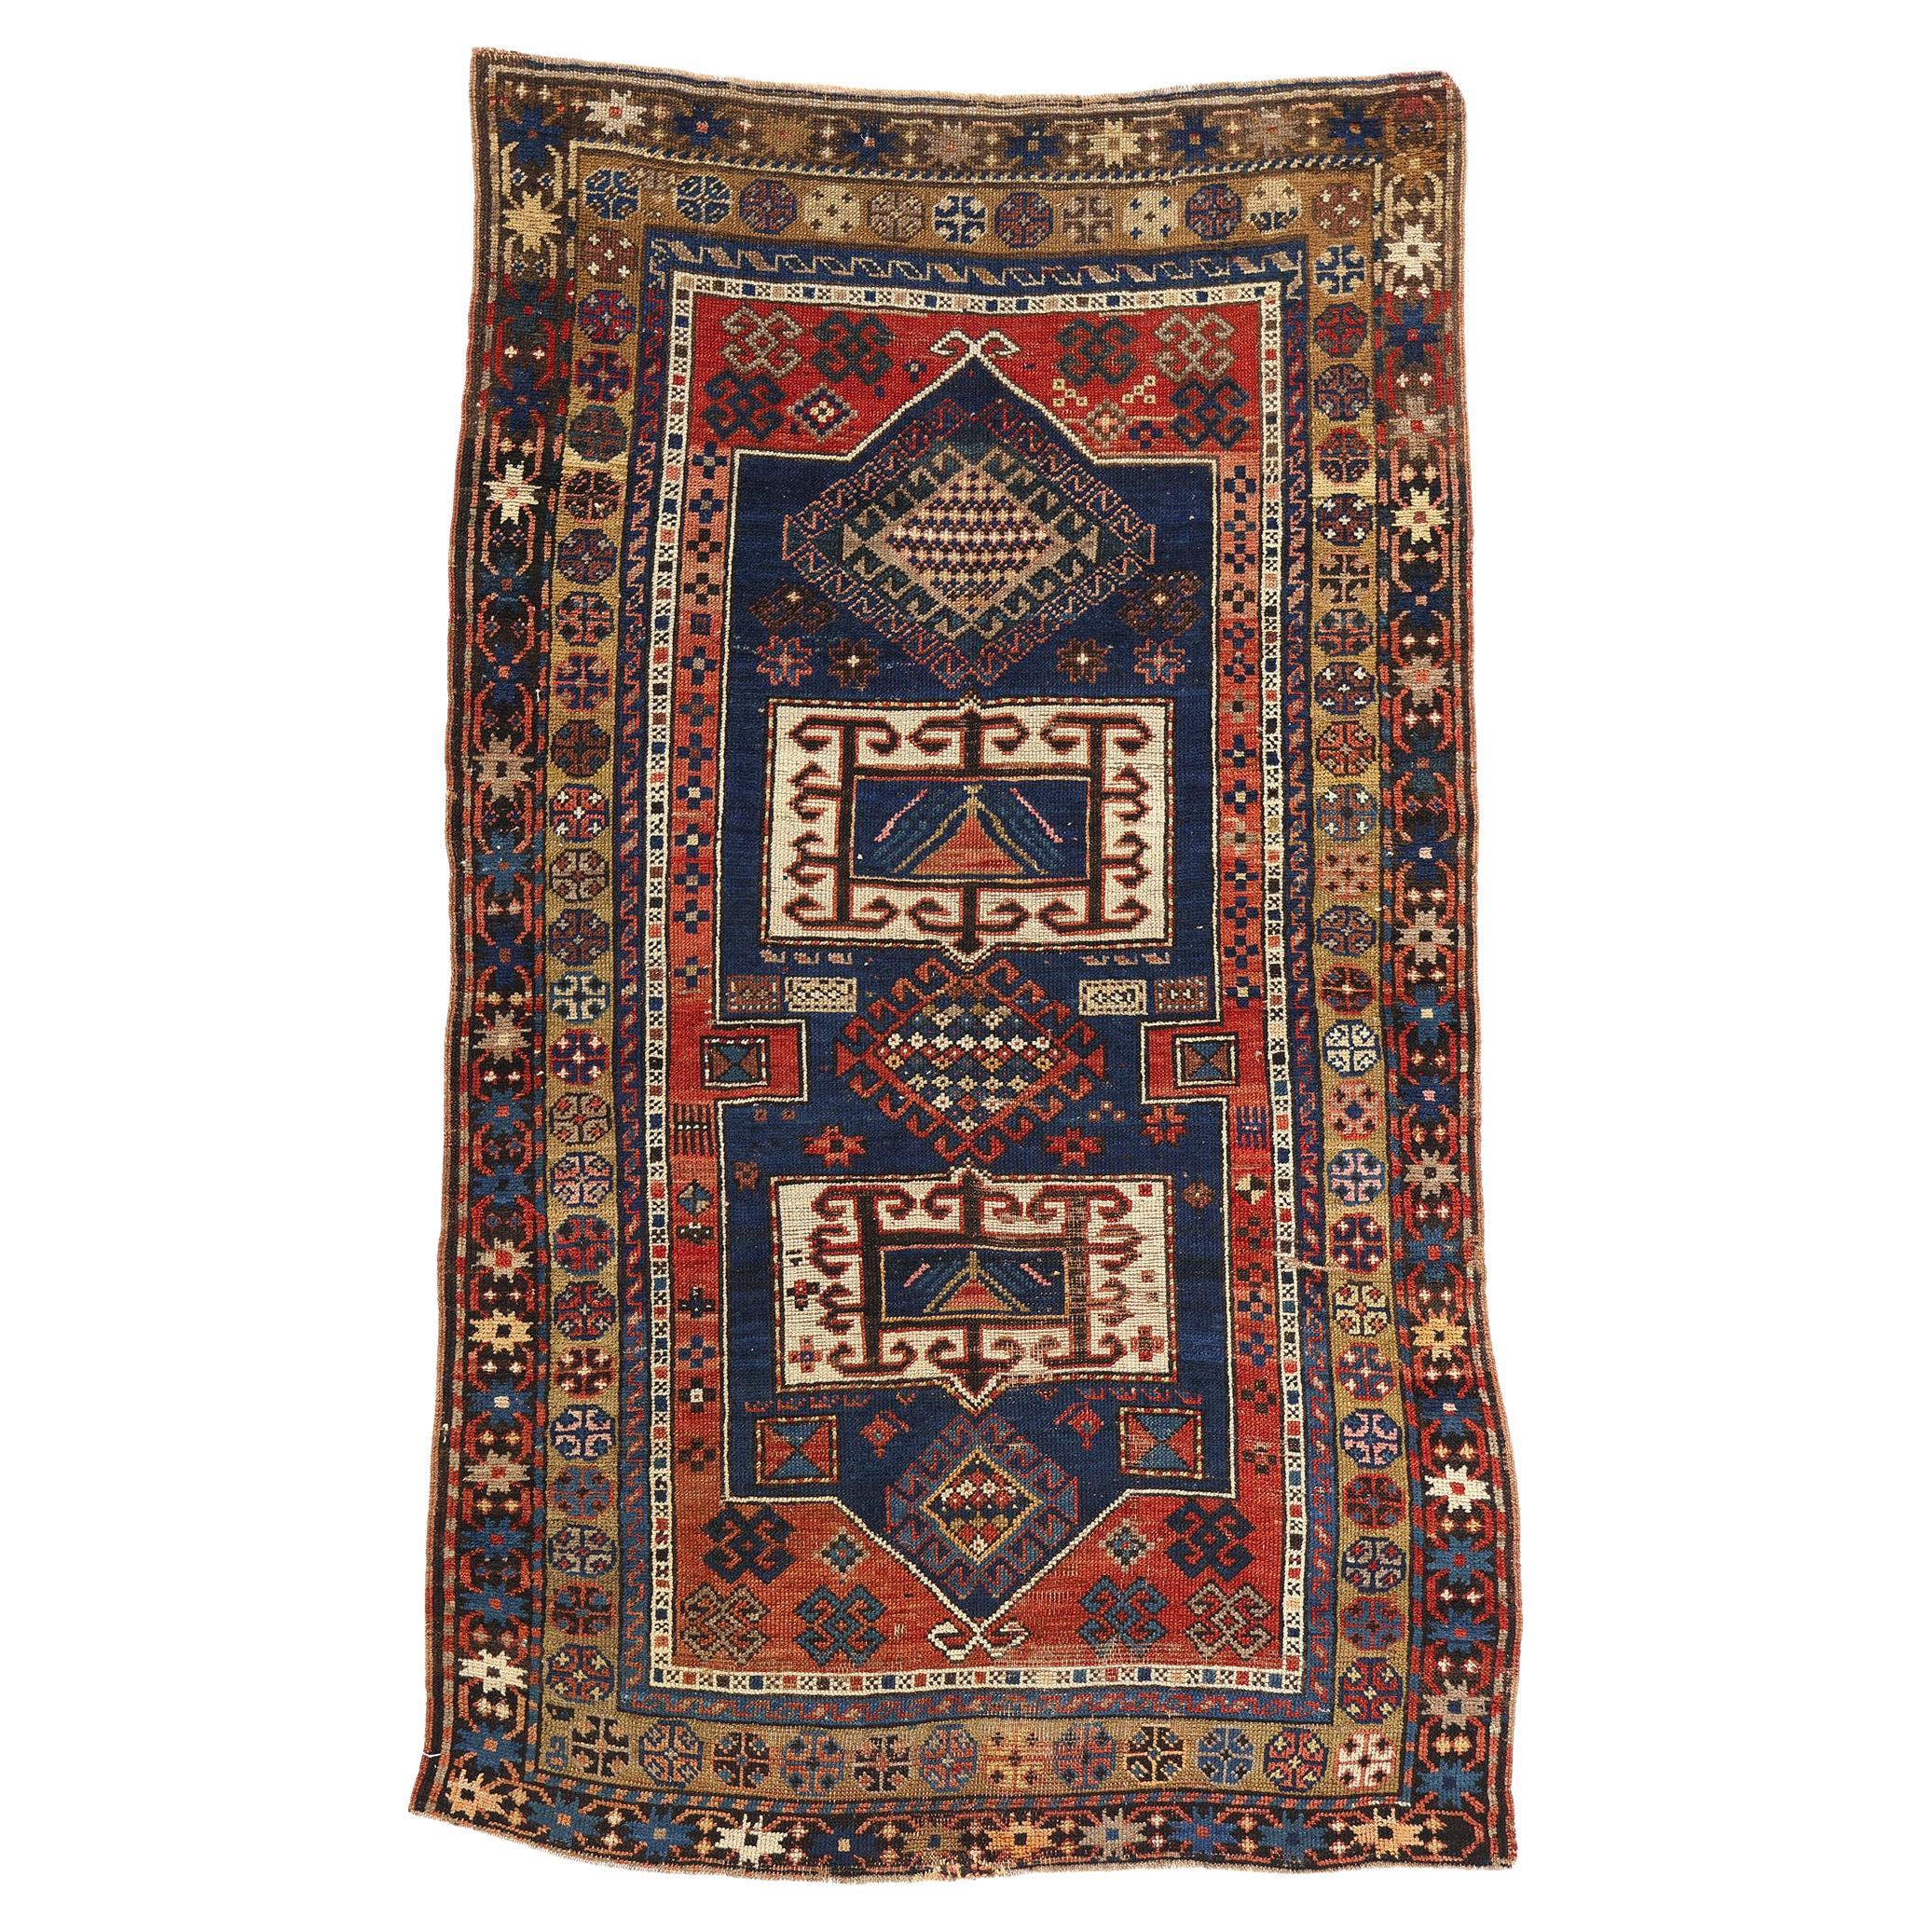 Late 19th Century Distressed Antique Caucasian Kazak Tribal Carpet